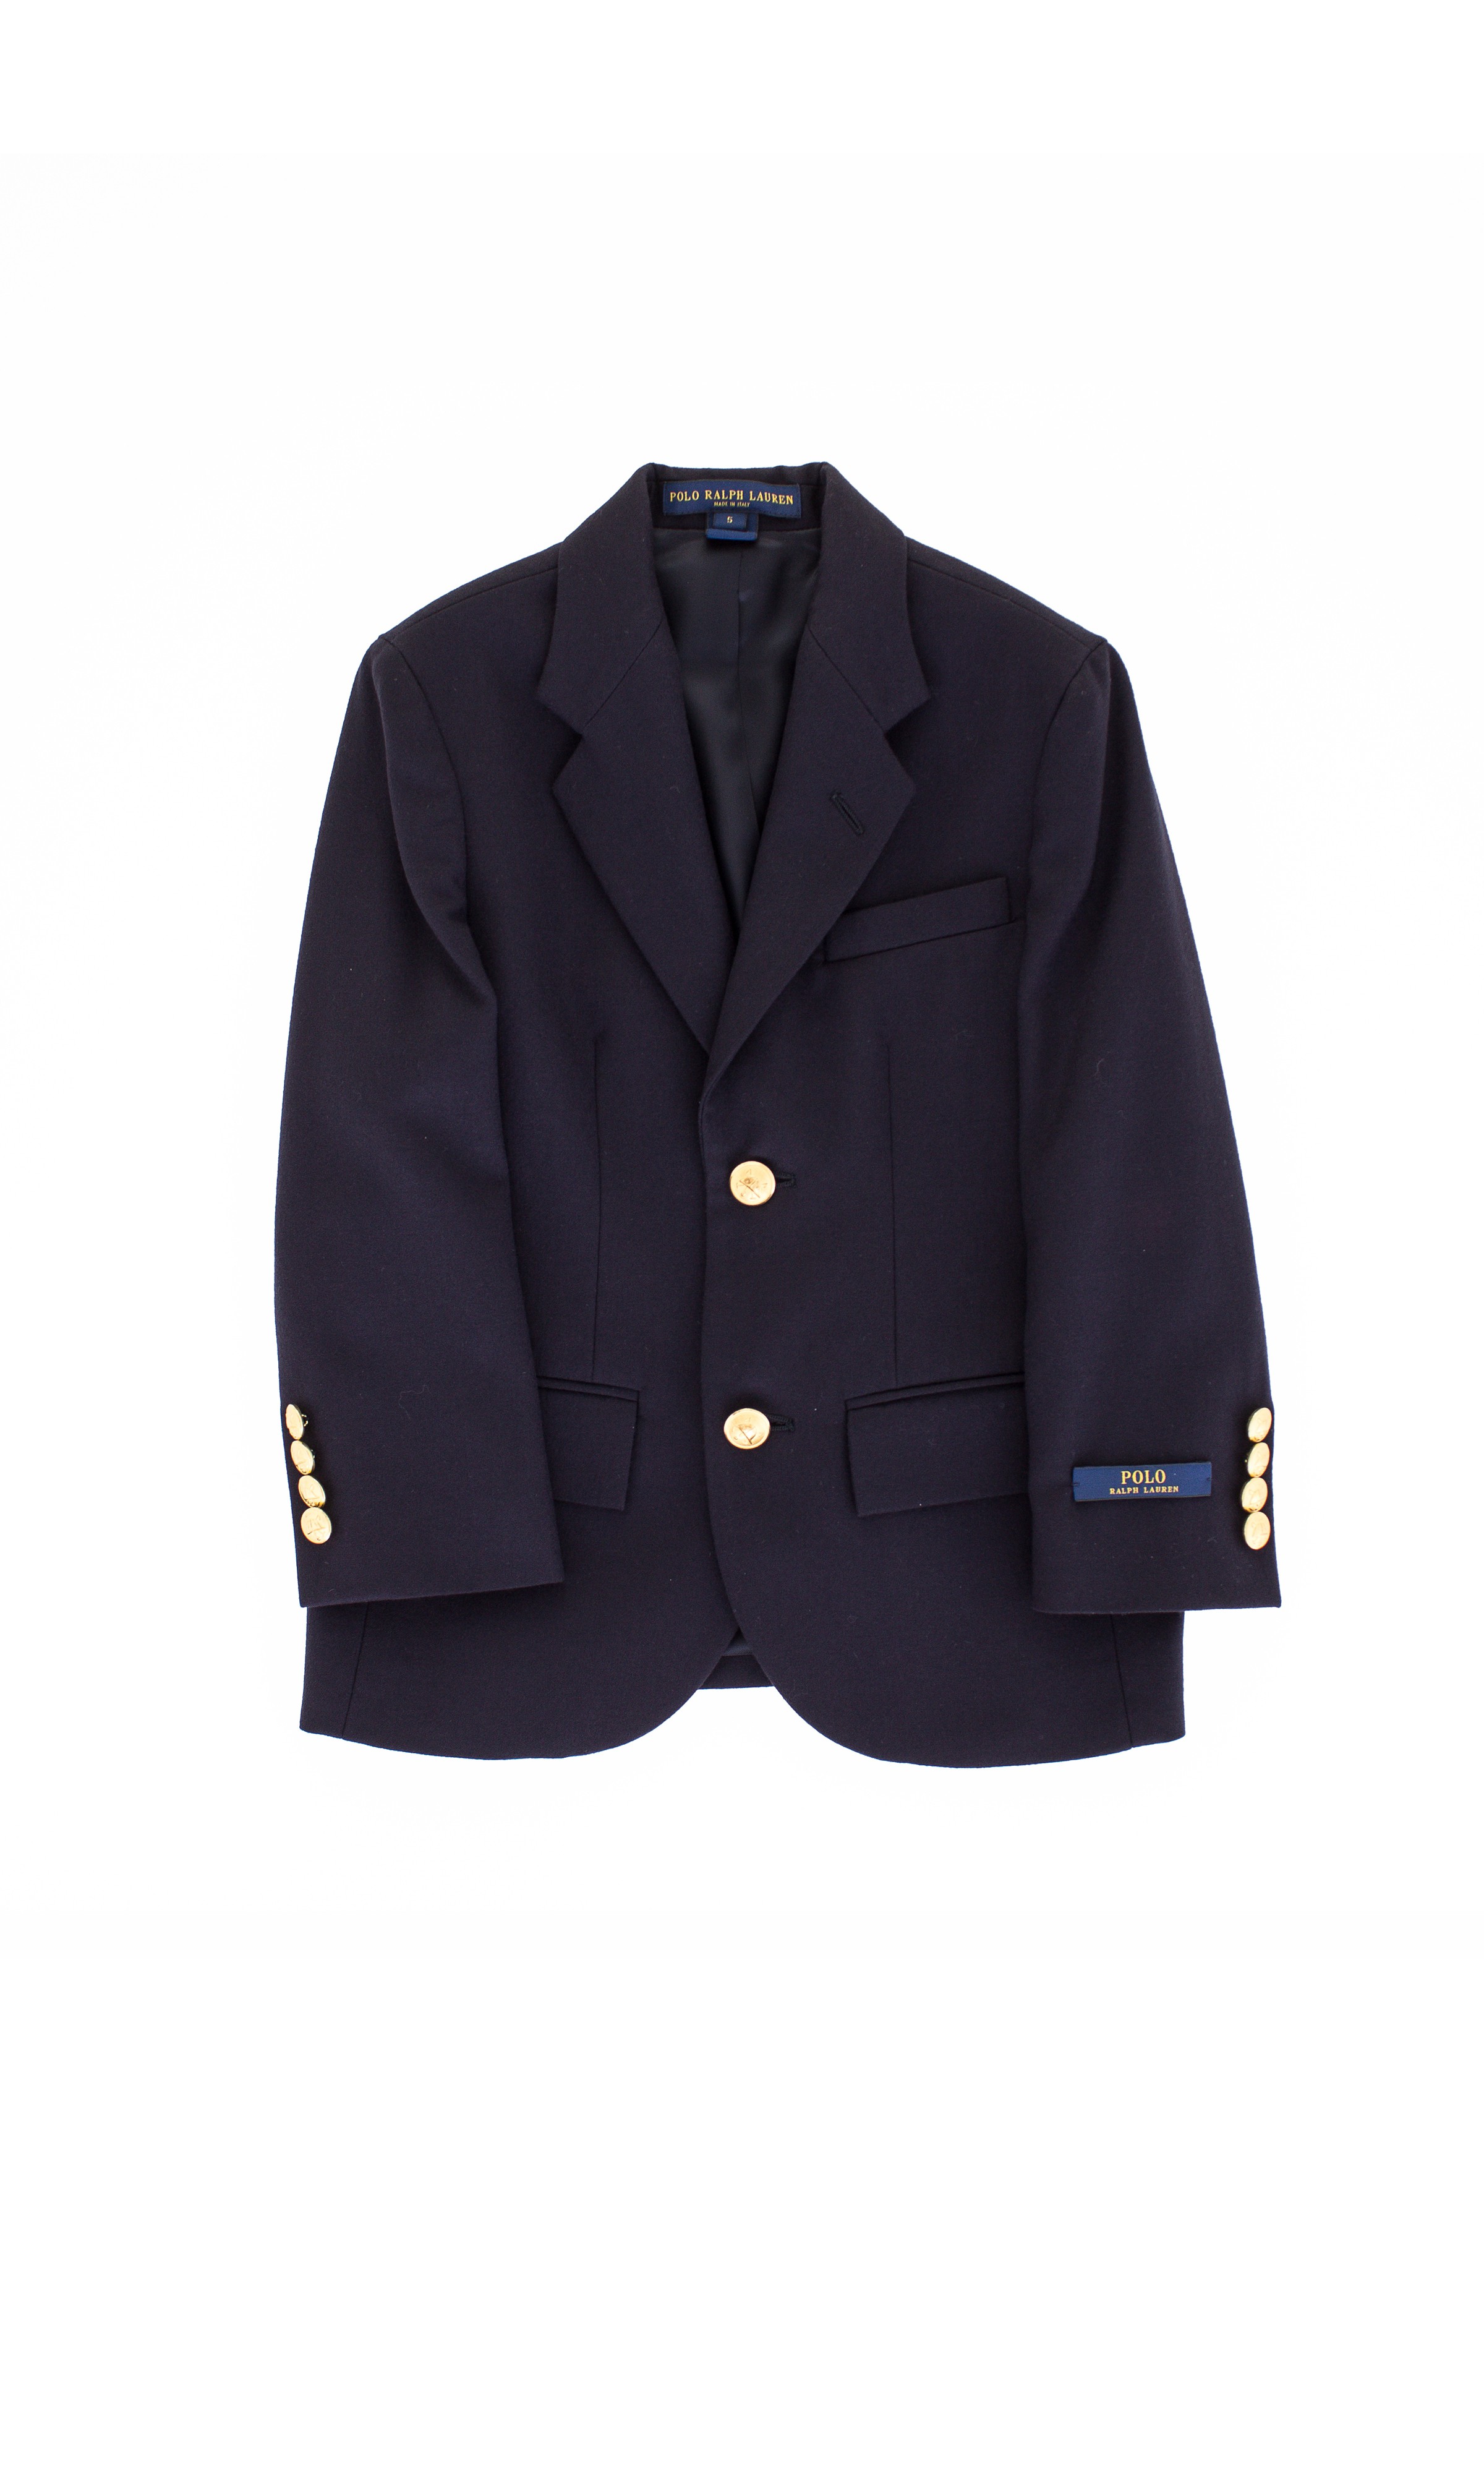 Navy blue suit jacket, Polo Ralph Lauren - Celebrity Club